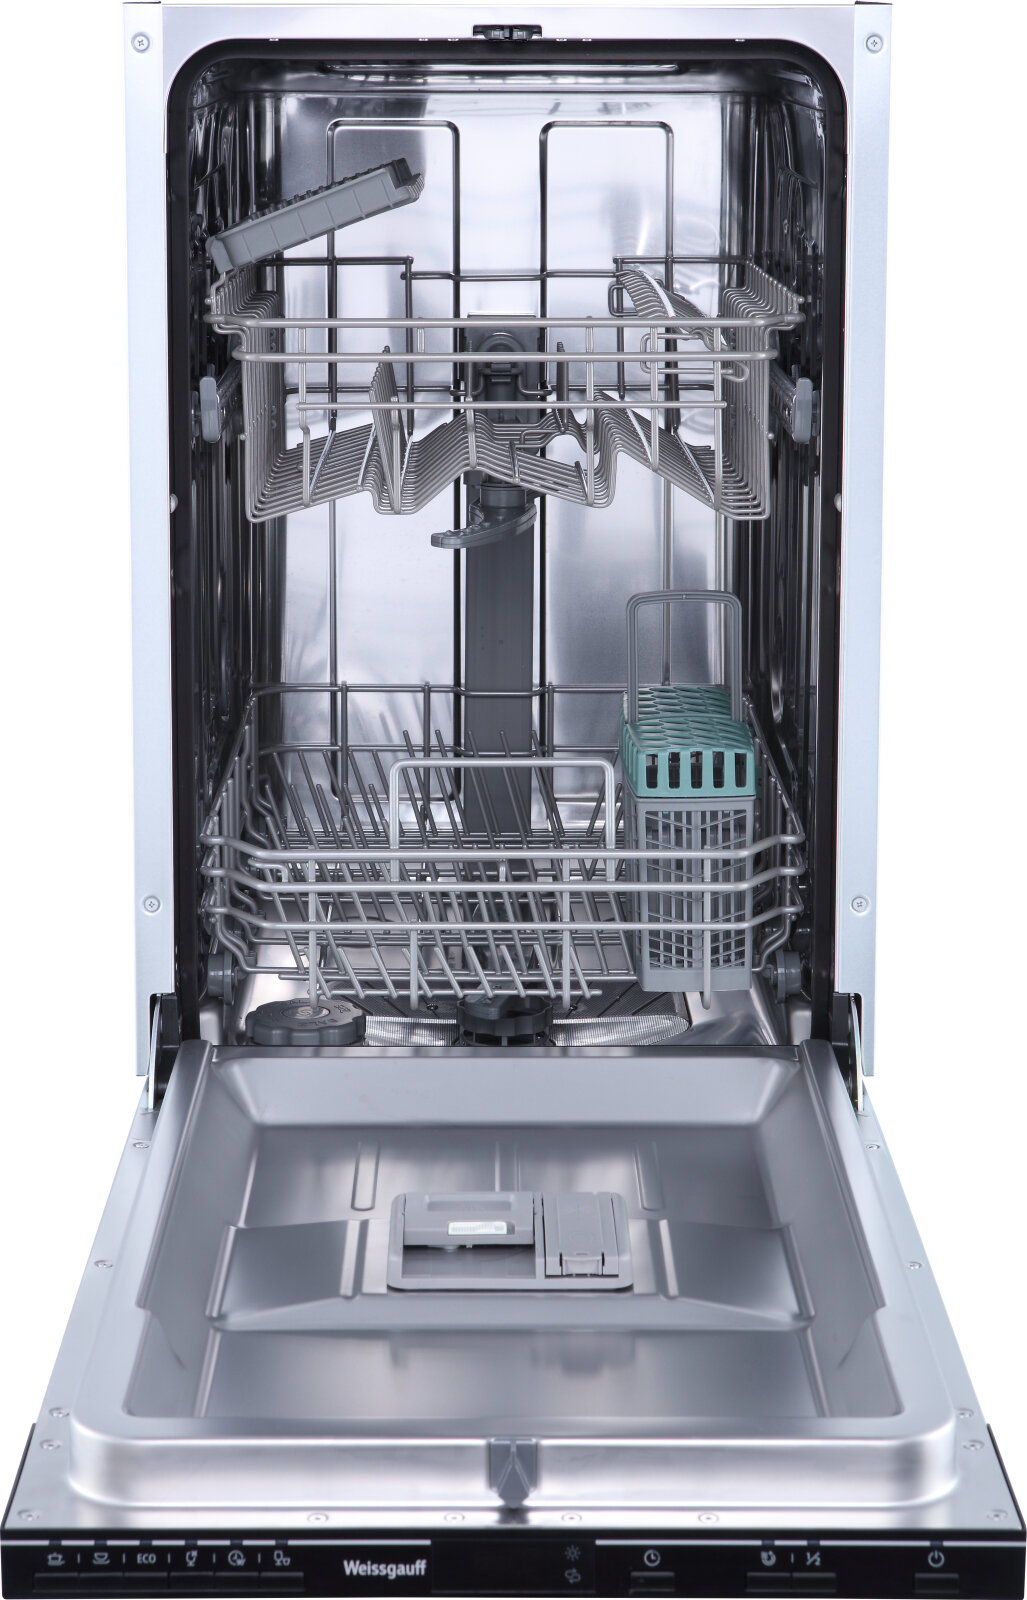 Встраиваемая посудомоечная машина Weissgauff BDW 4526 D, узкая 45 см ,3 года гарантии, 10 комплектов посуды, 6 программ, быстрый режим, 90 минут, интенсивная программа, дополнительная сушка, таймер, Индикаторы соли и ополаскивателя, дозагрузка